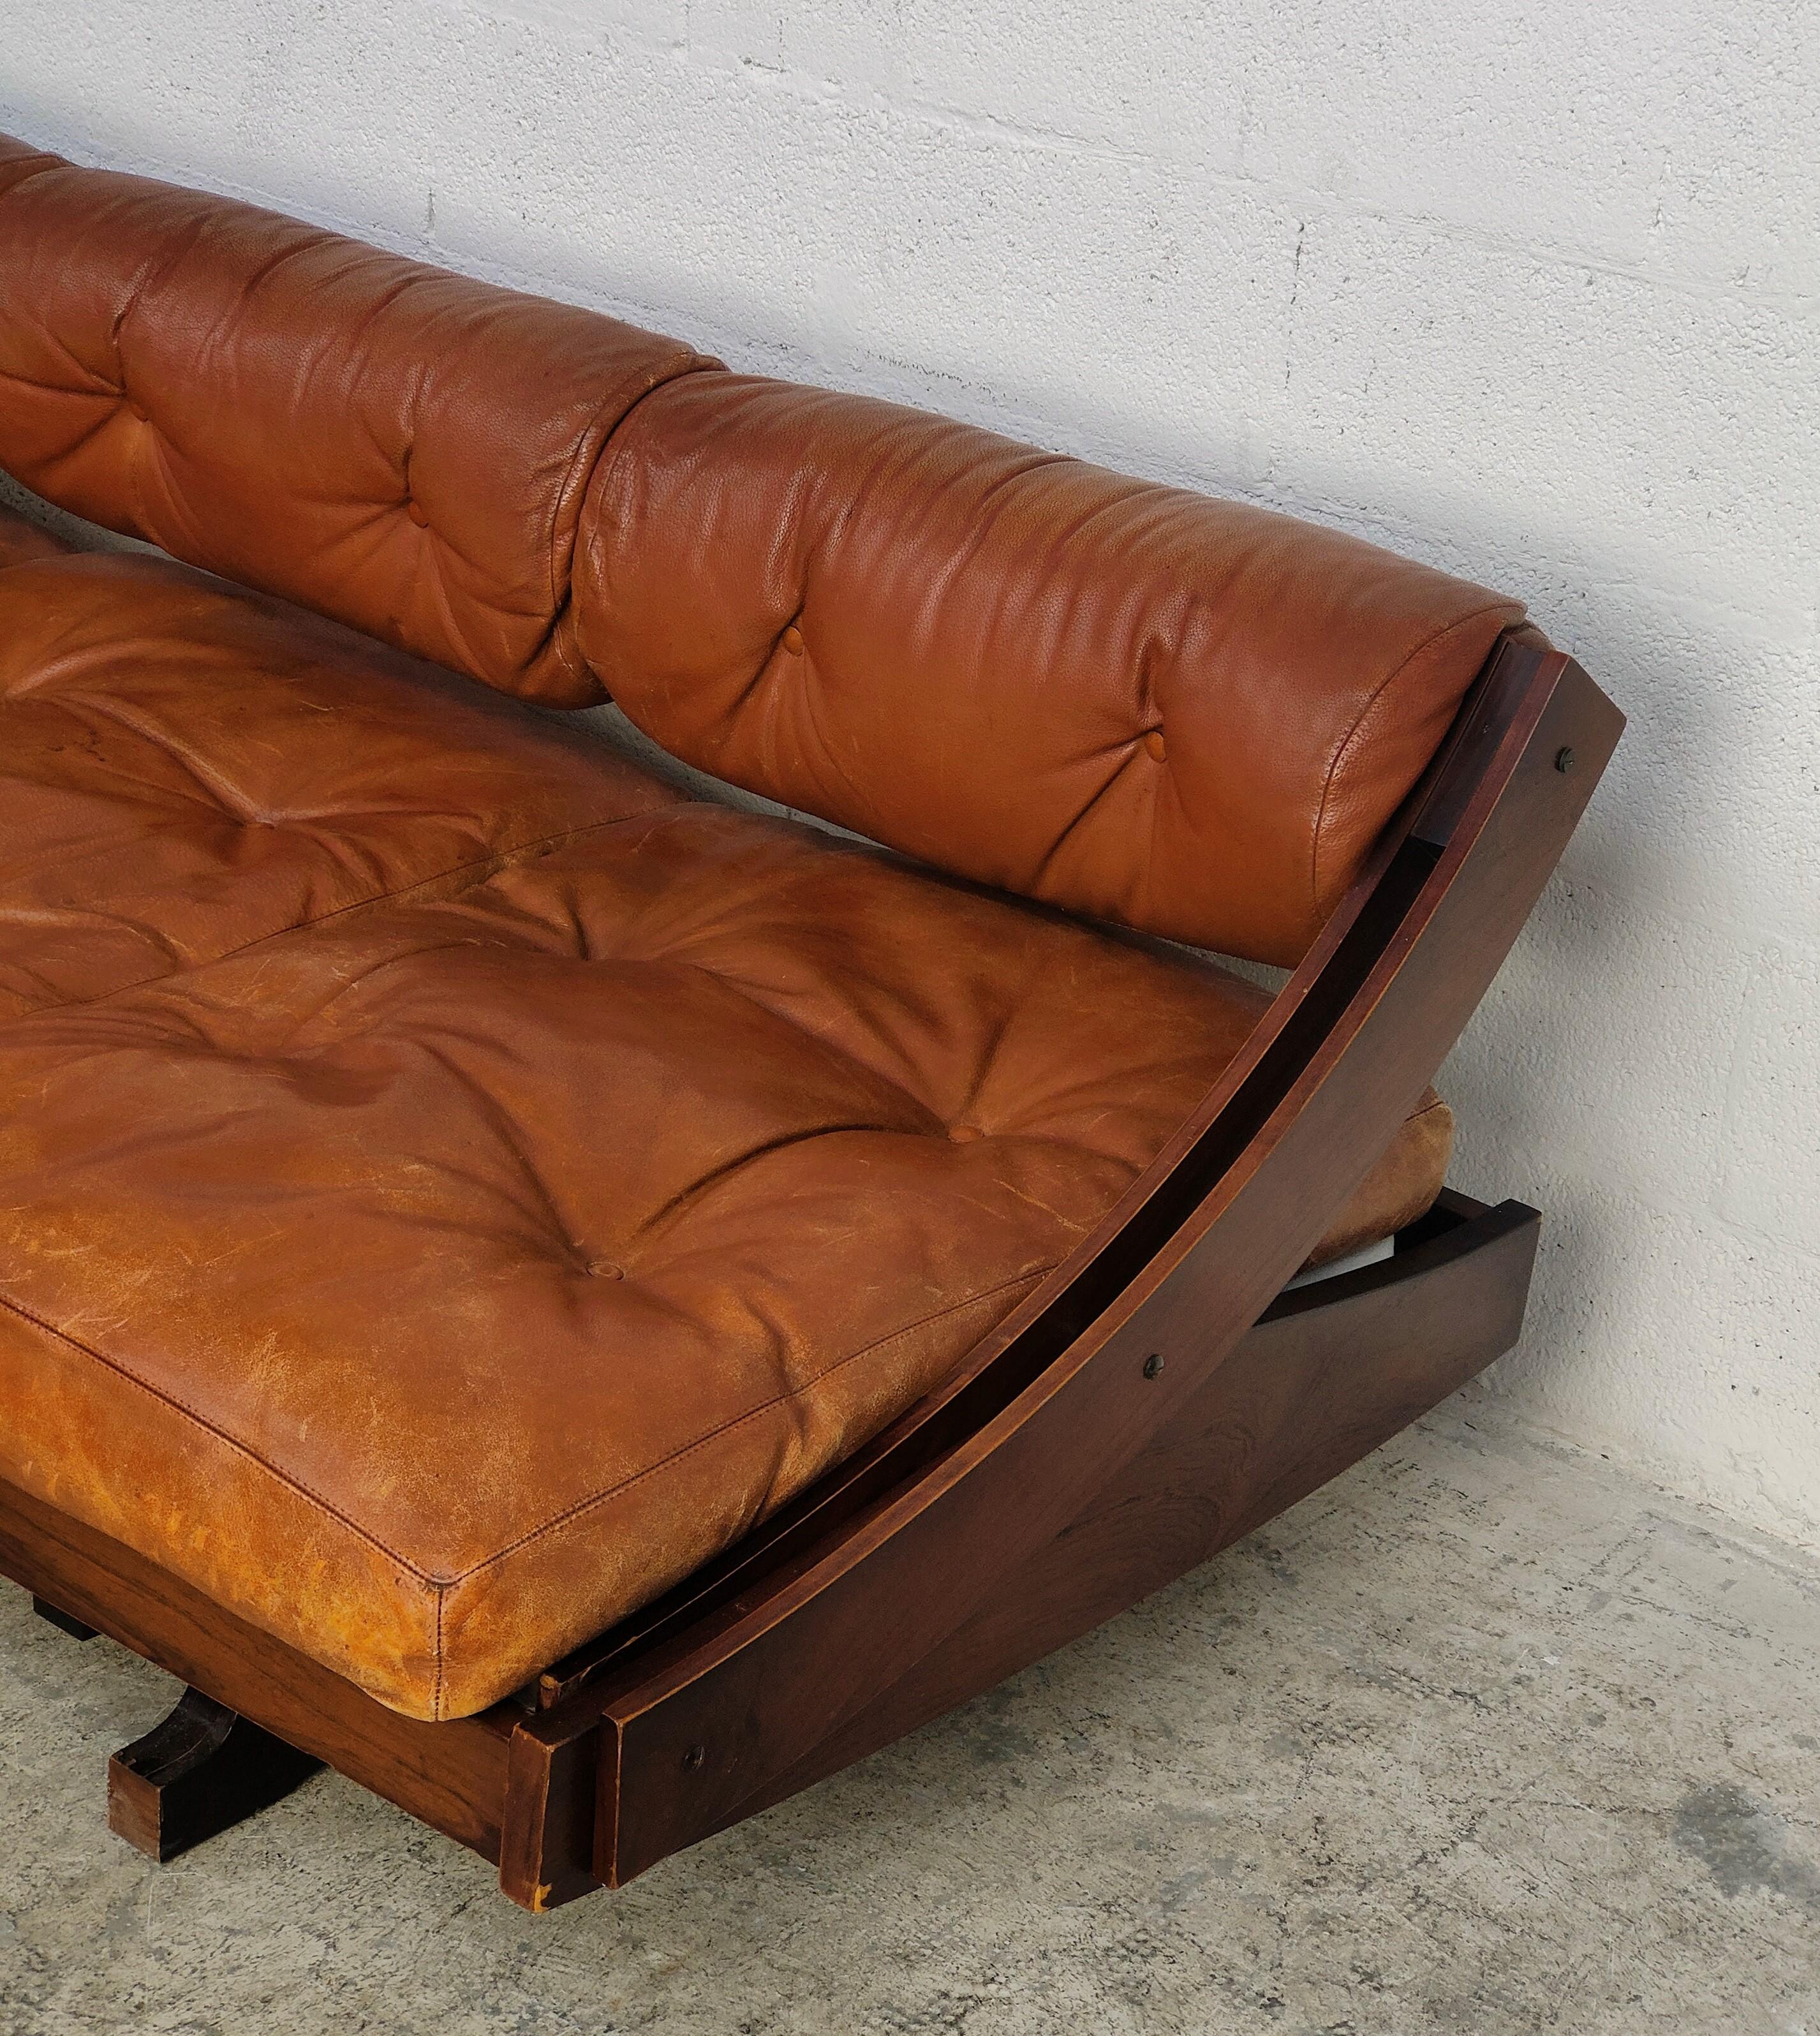 Leder-Tagesbett Sofa GS 195 von Gianni Songia für Sormani 60s (Mitte des 20. Jahrhunderts)